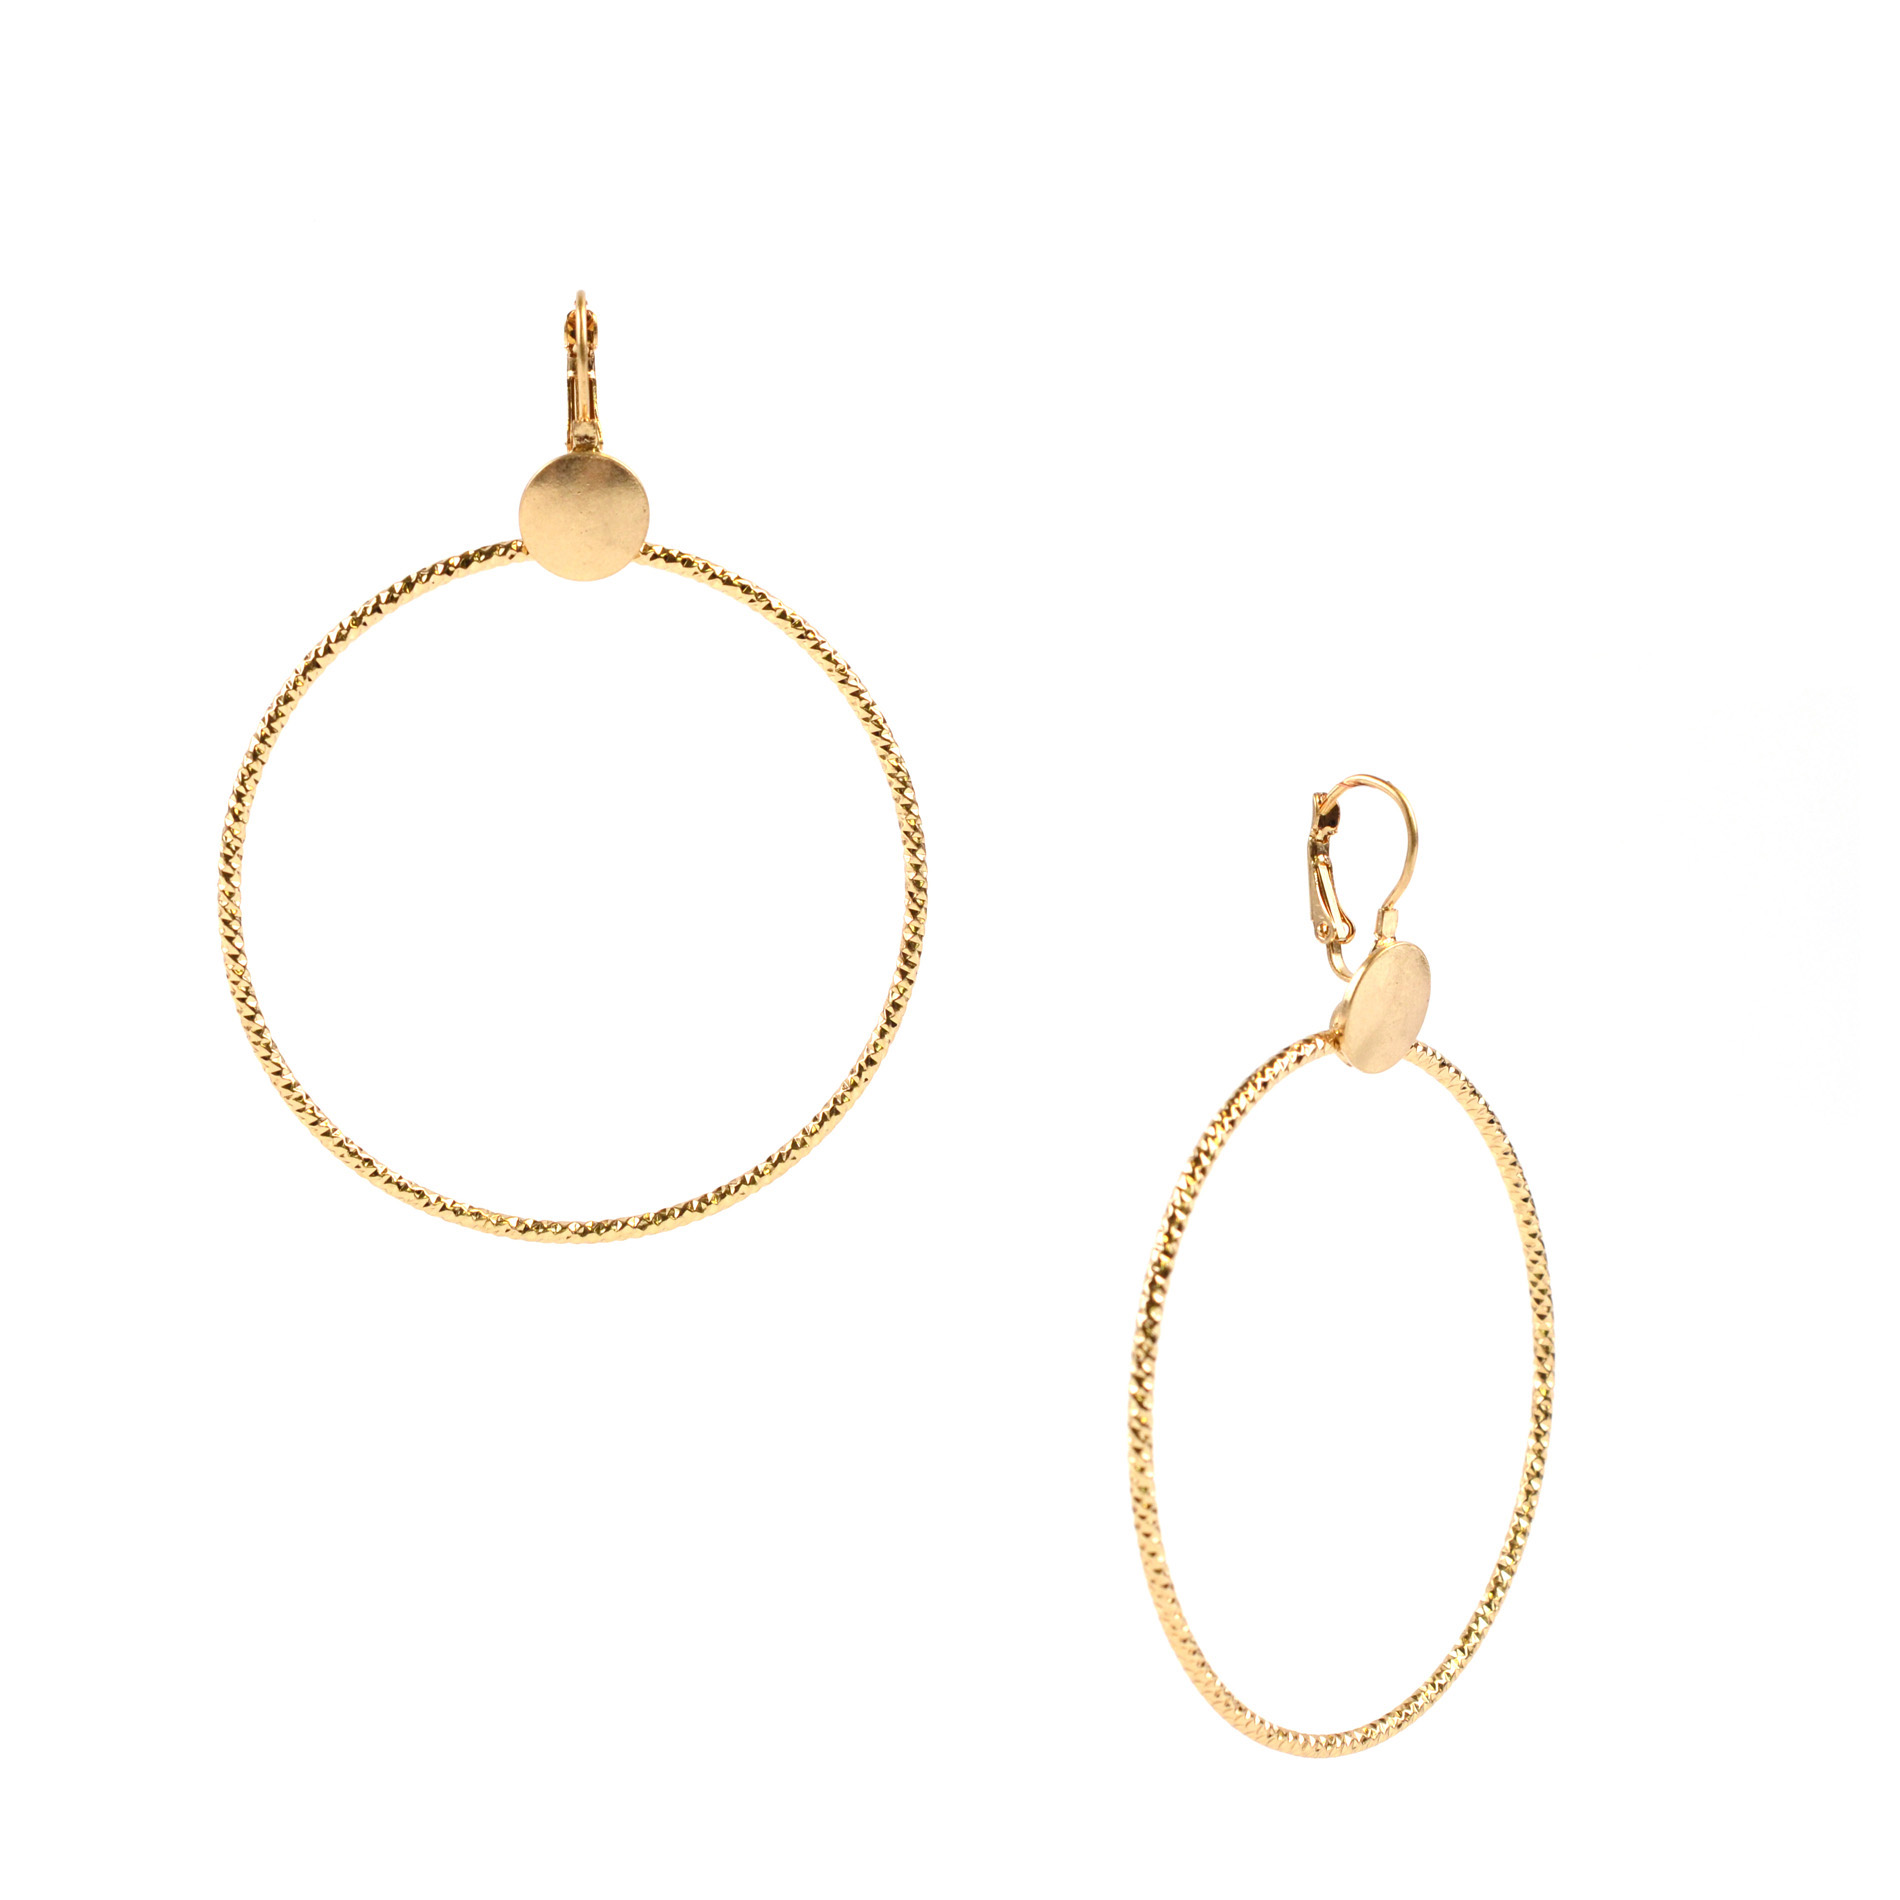 California 90210 Gold-Tone Circular Drop Earrings